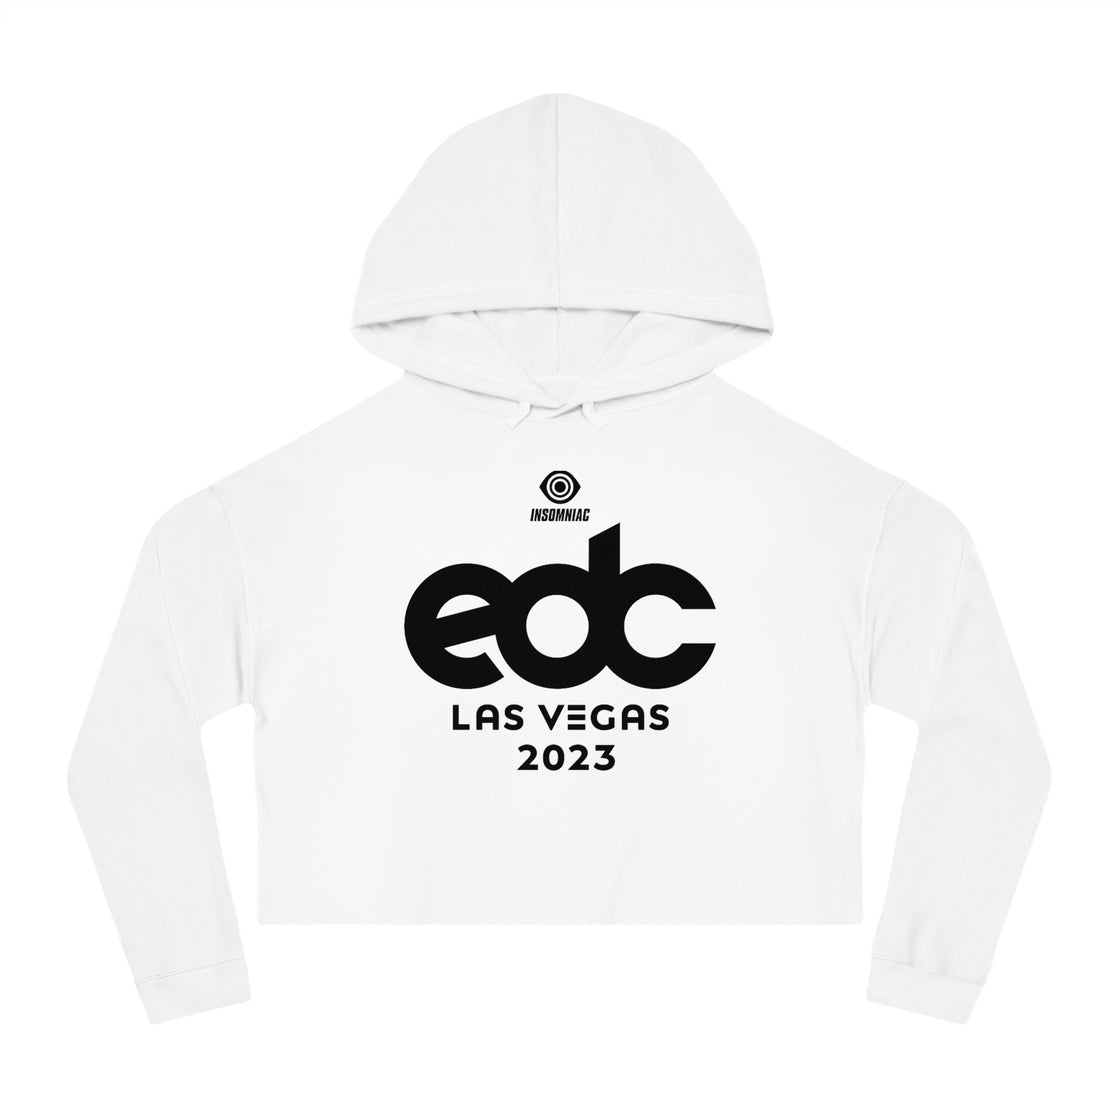 EDC Las Vegas Womens Cropped Hooded Sweatshirt Merch